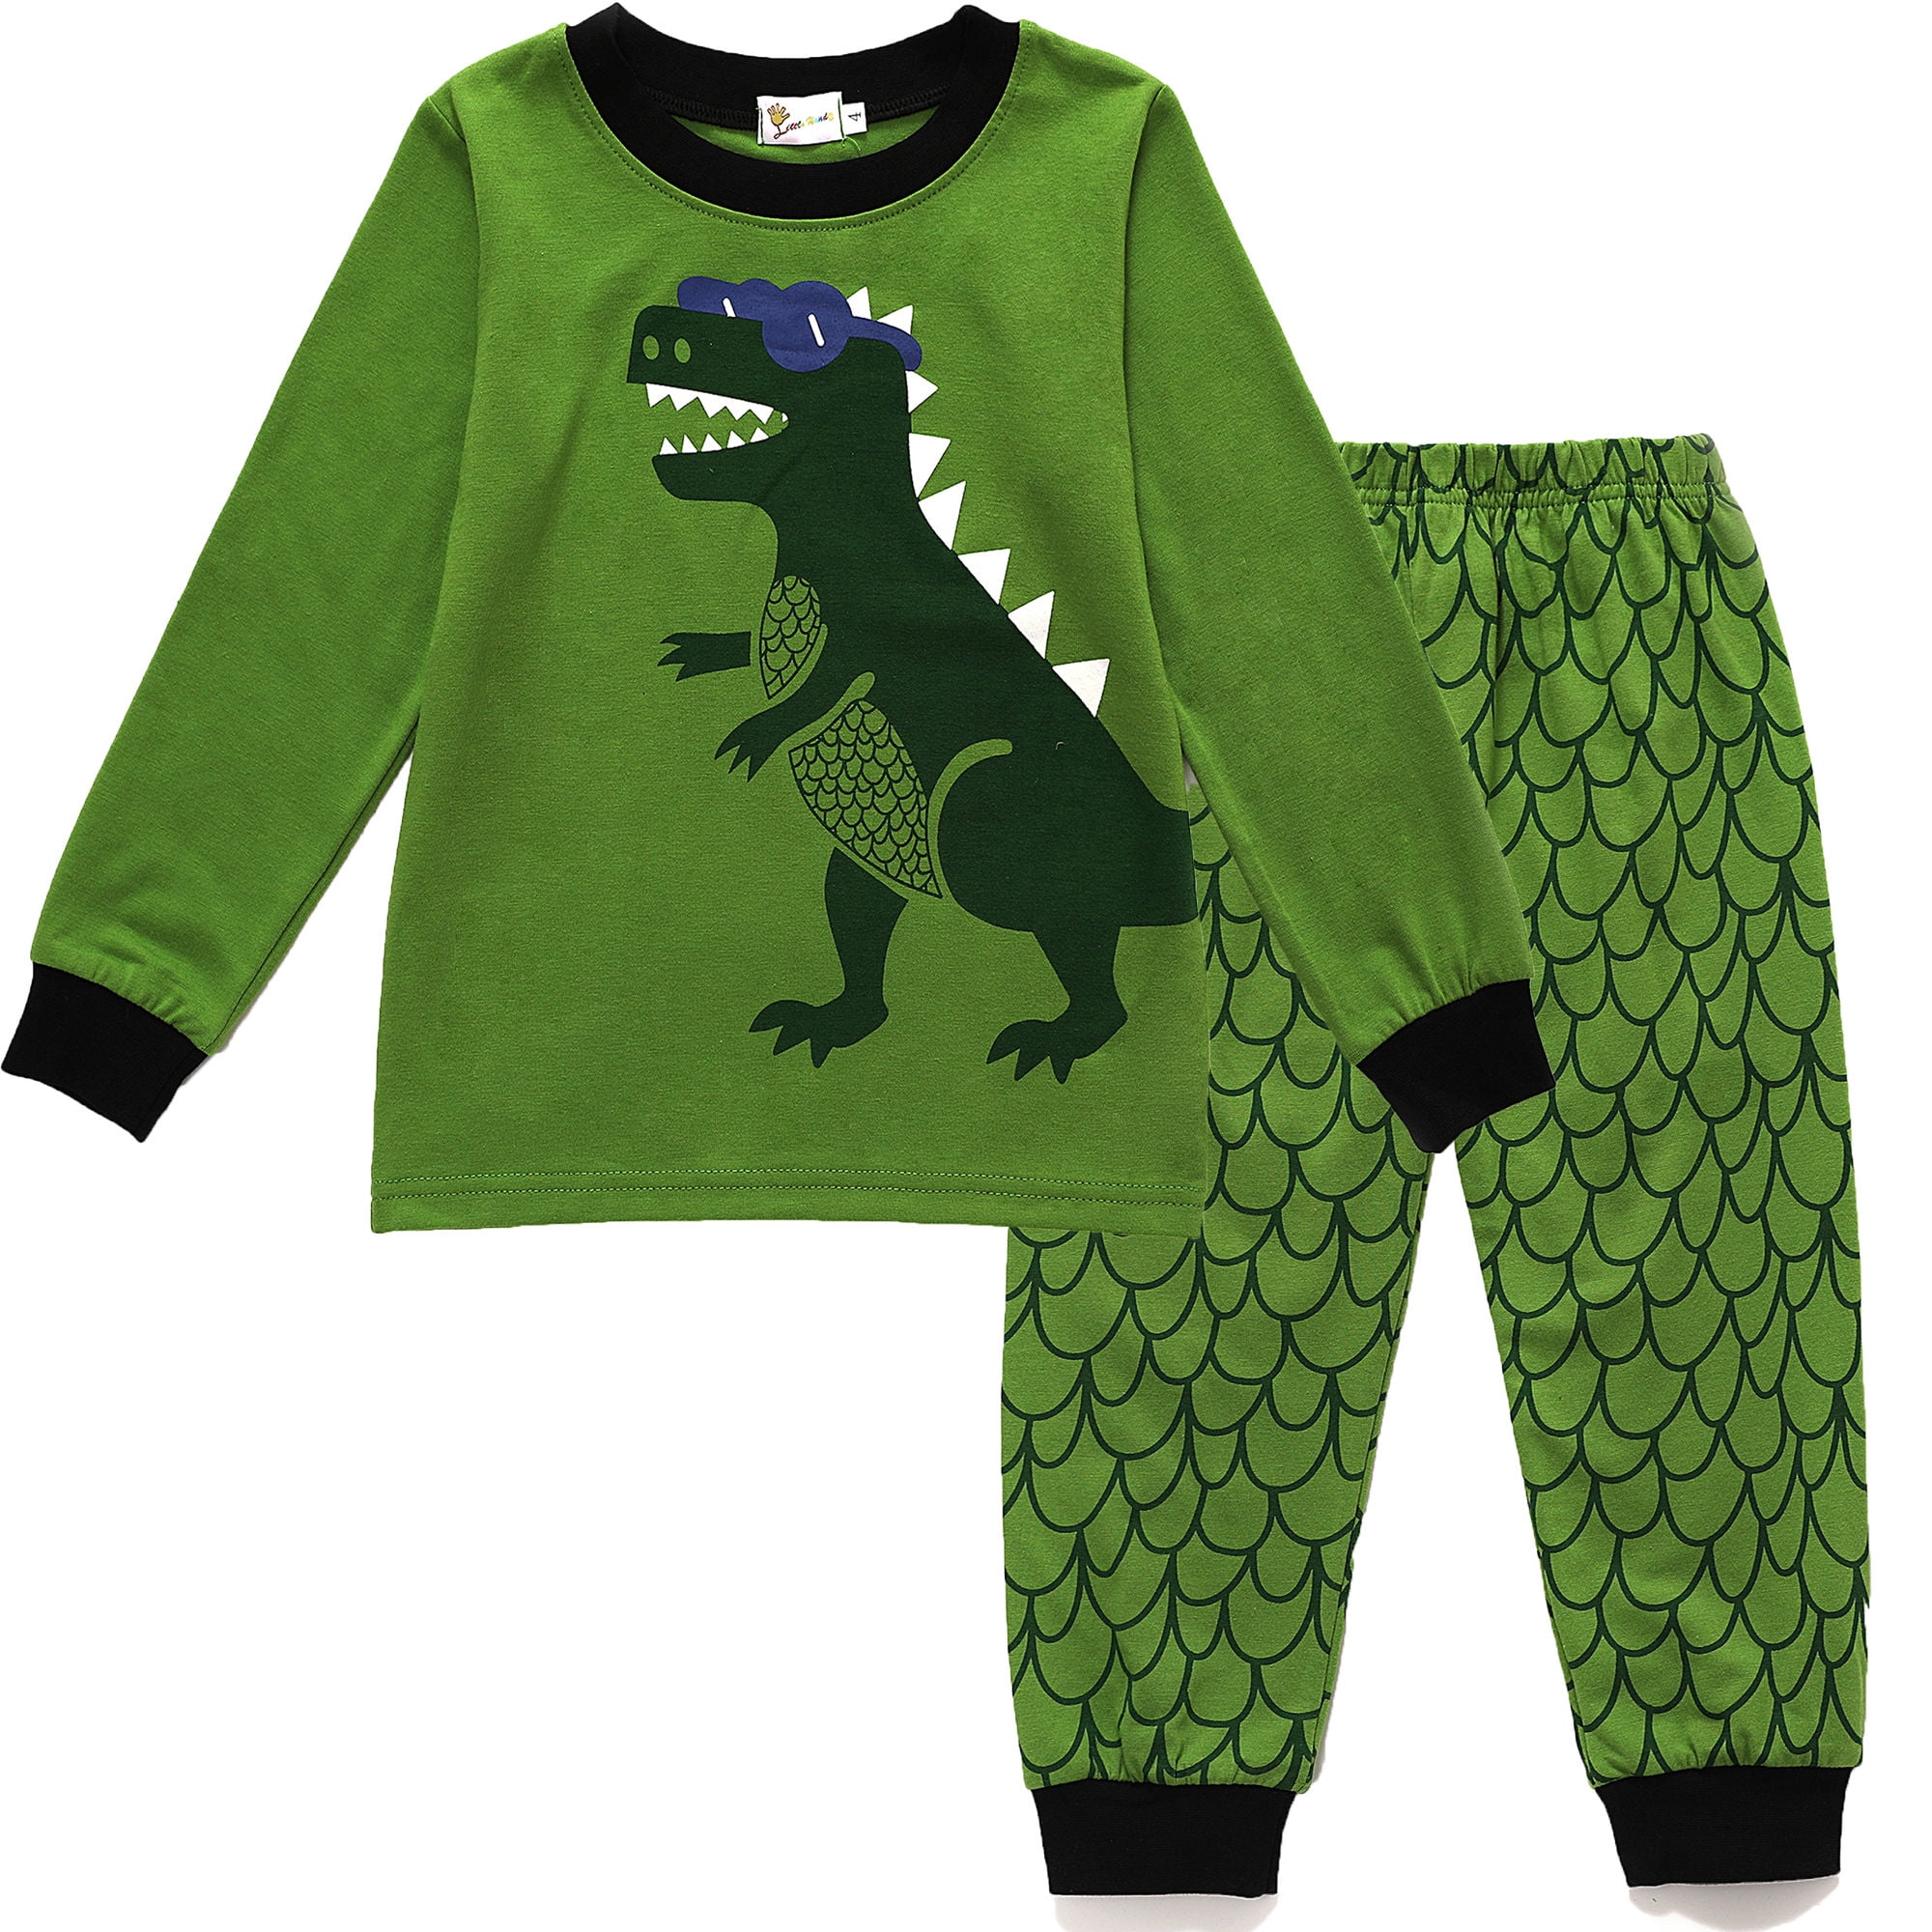 ALaMing Children Pajamas Game Life Boys Dinosaur Pj 100% Cotton Sleepwear 2Pcs/Set Kids Clothes